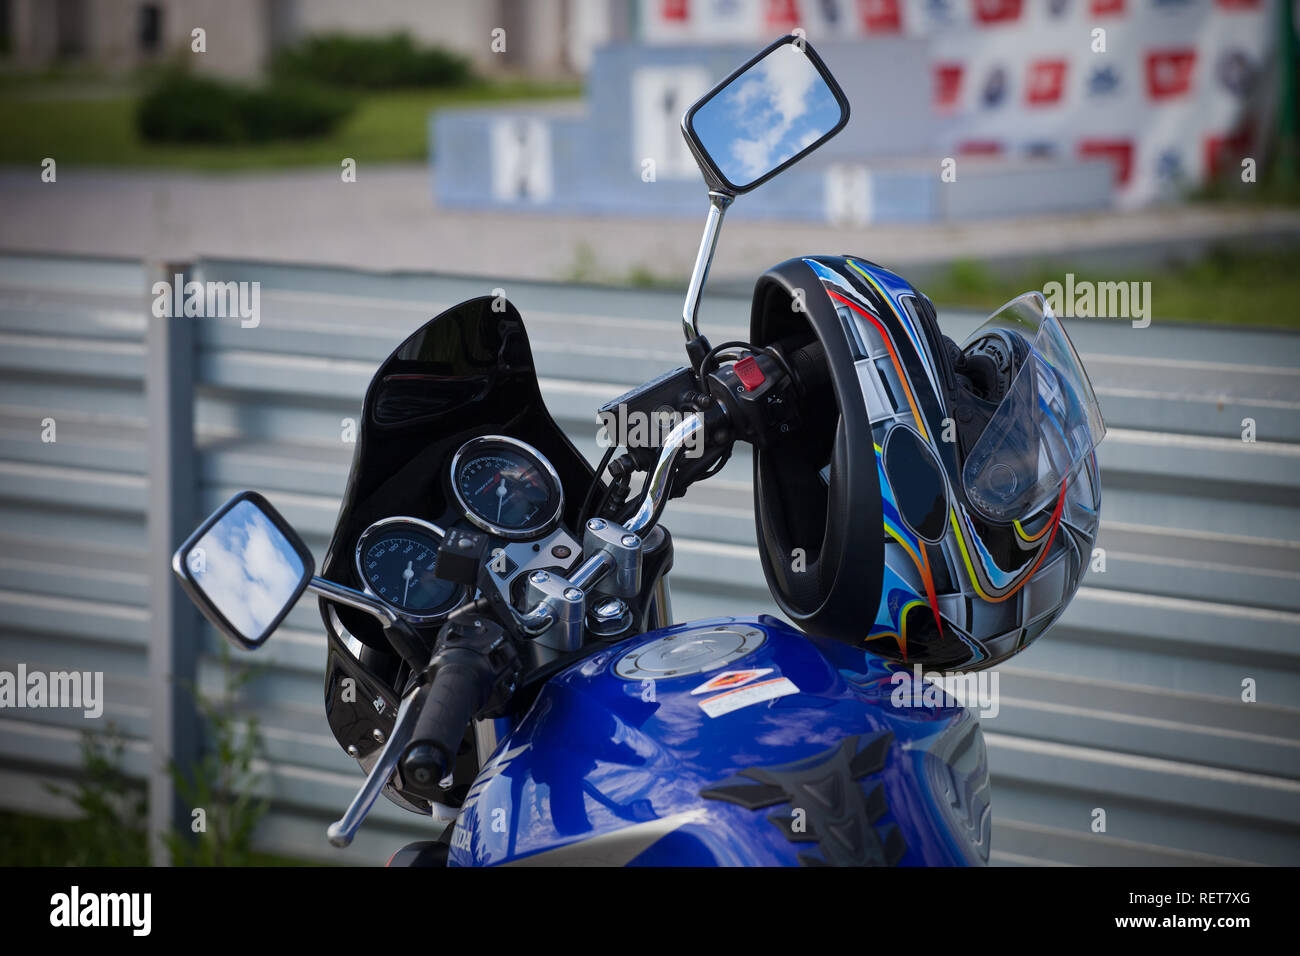 Motorrad Helm hängen an den Lenker. Motorrad Sport. FIM Road Racing  Stockfotografie - Alamy